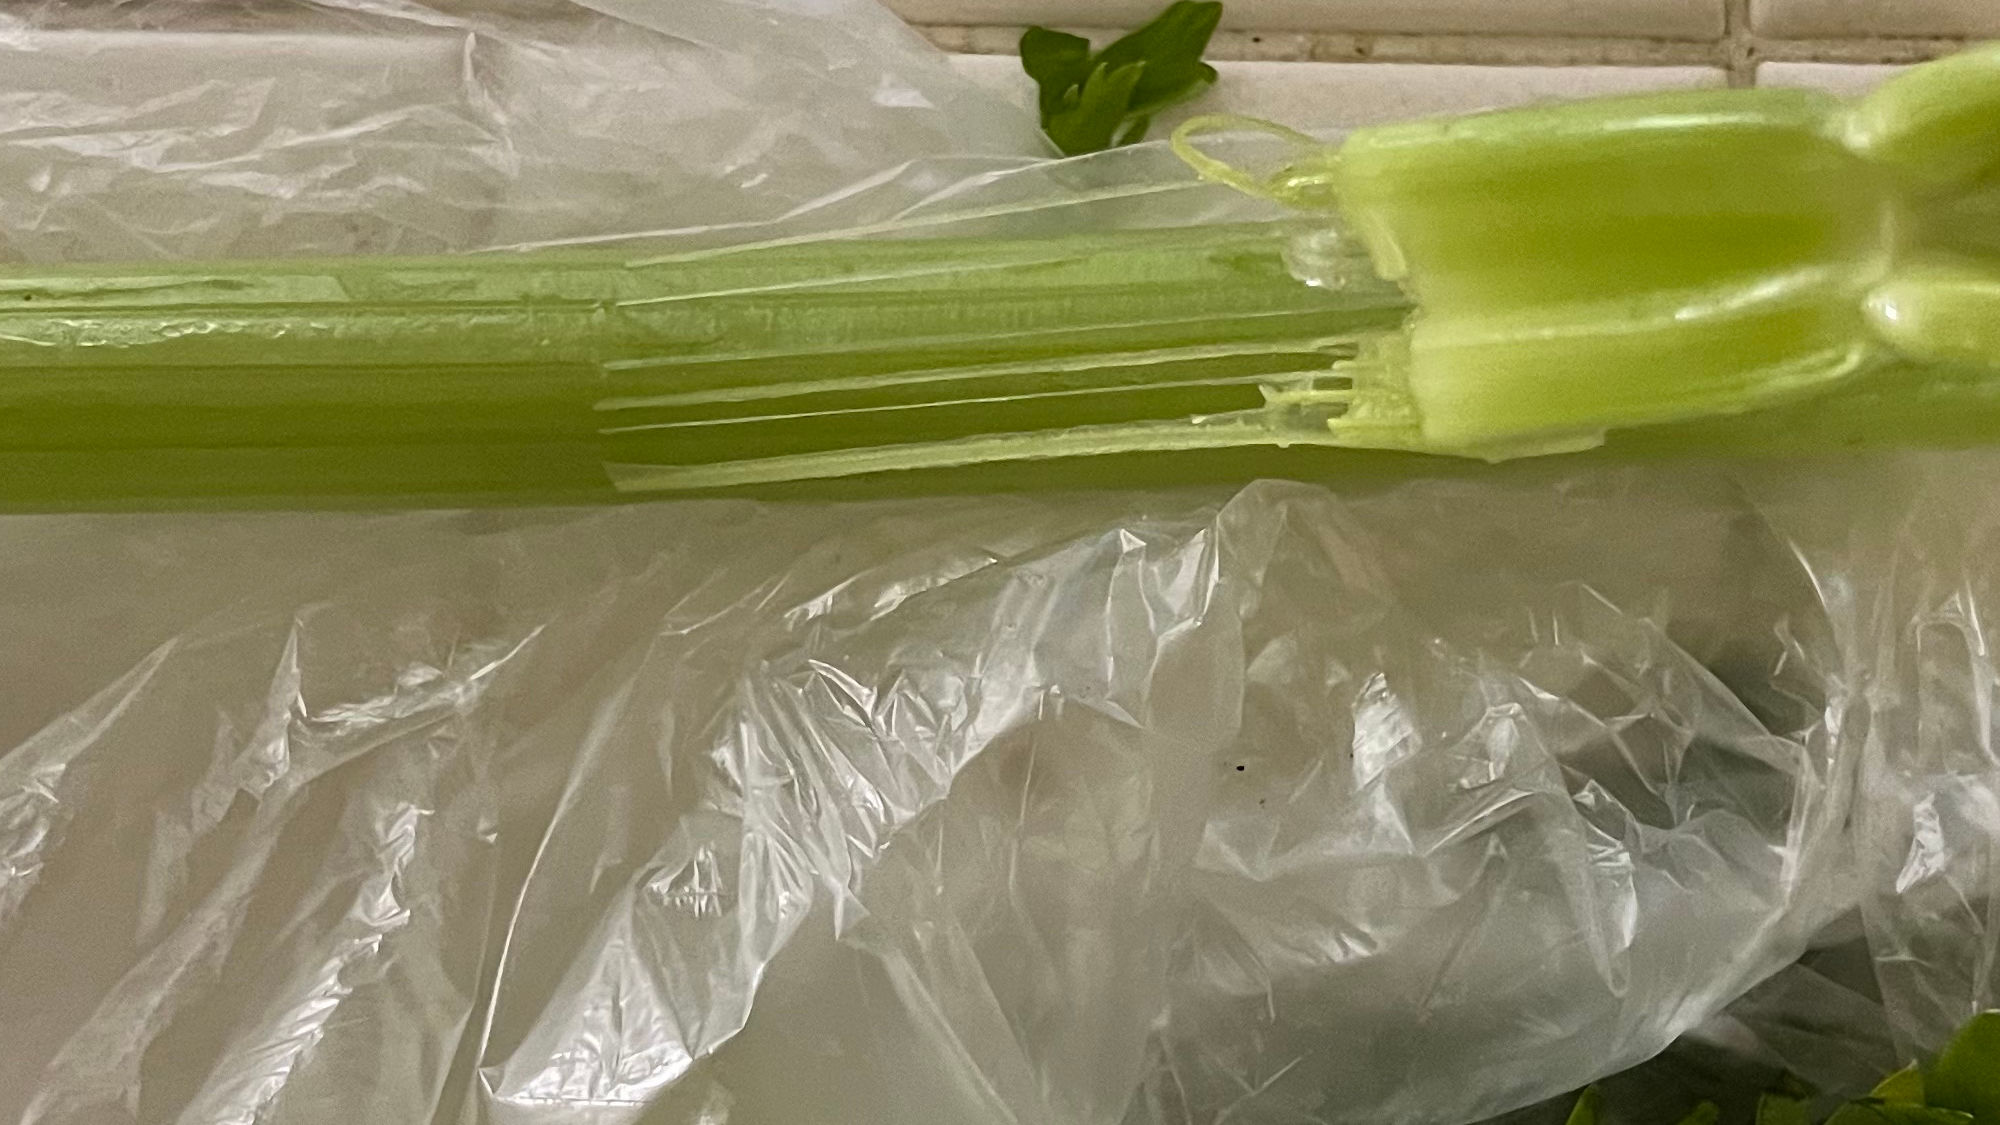 Celery Remove Threads